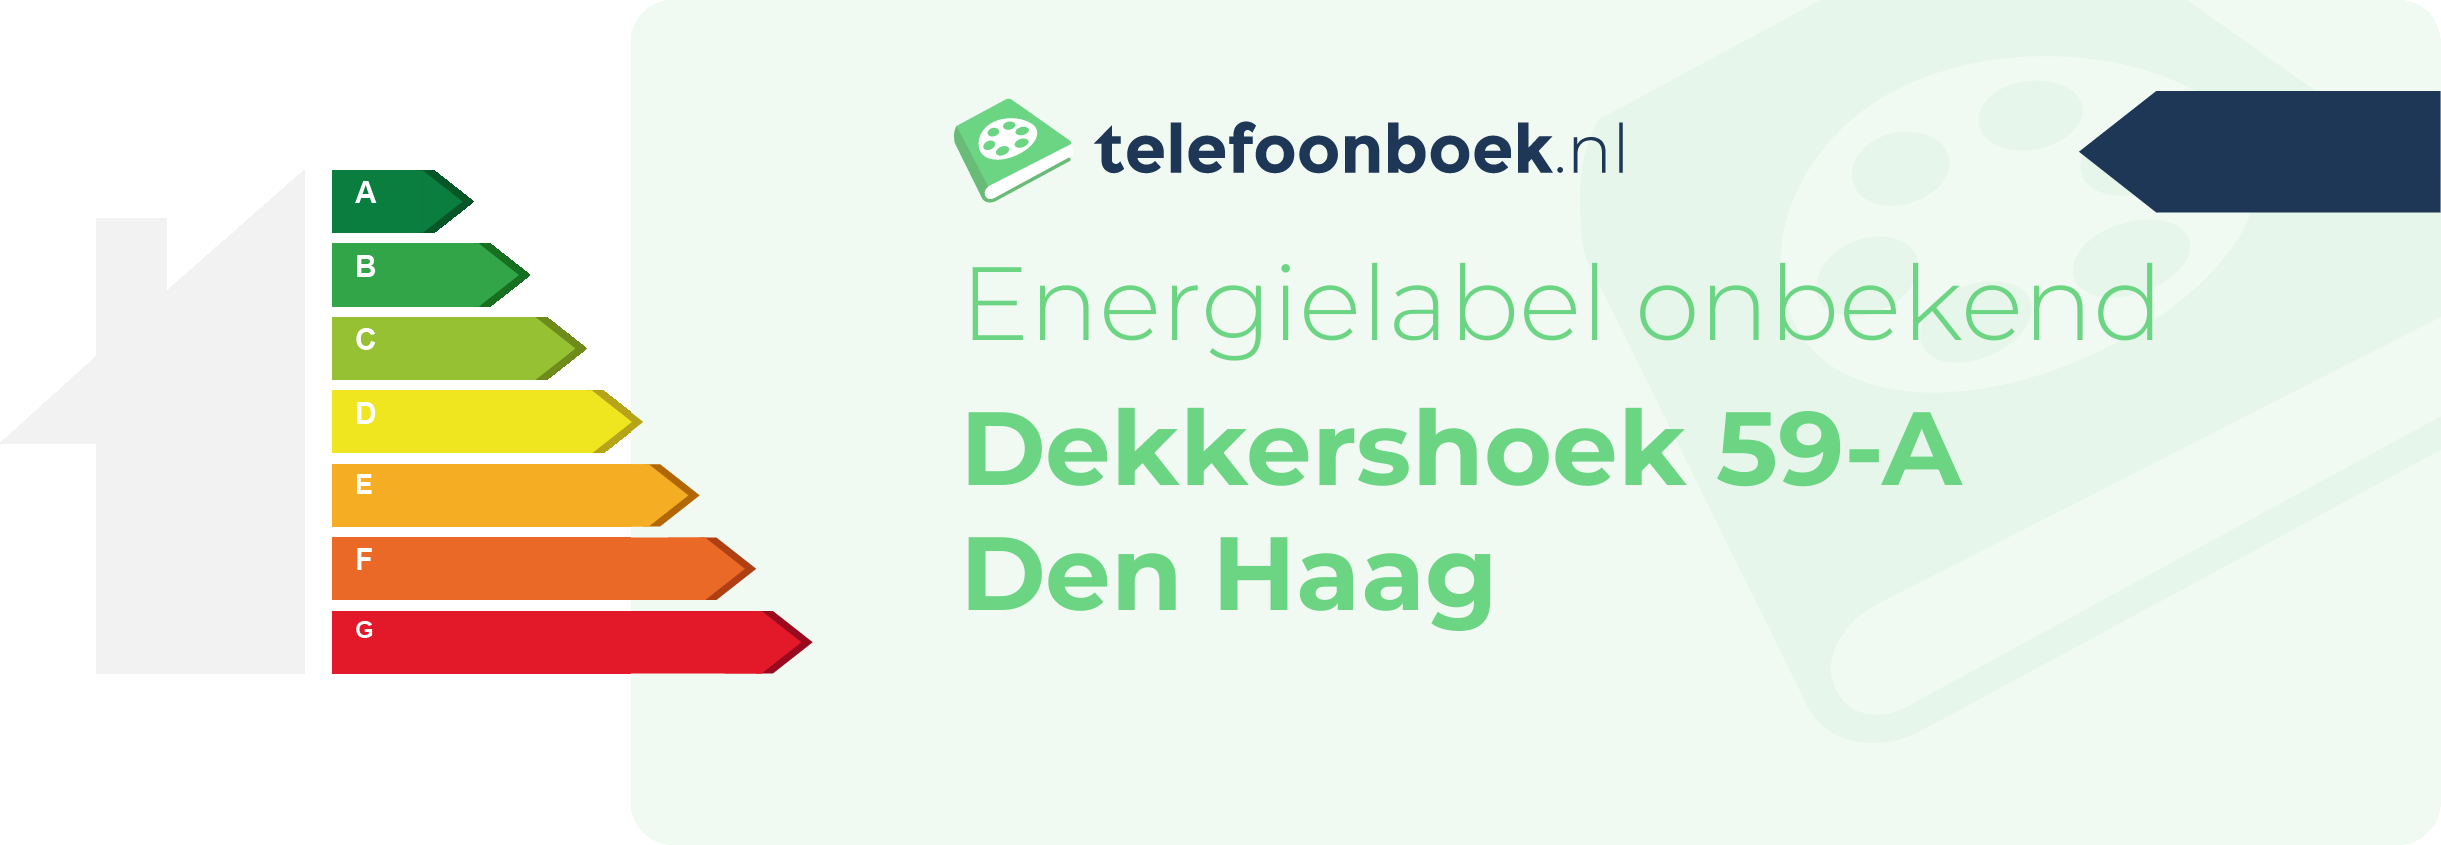 Energielabel Dekkershoek 59-A Den Haag